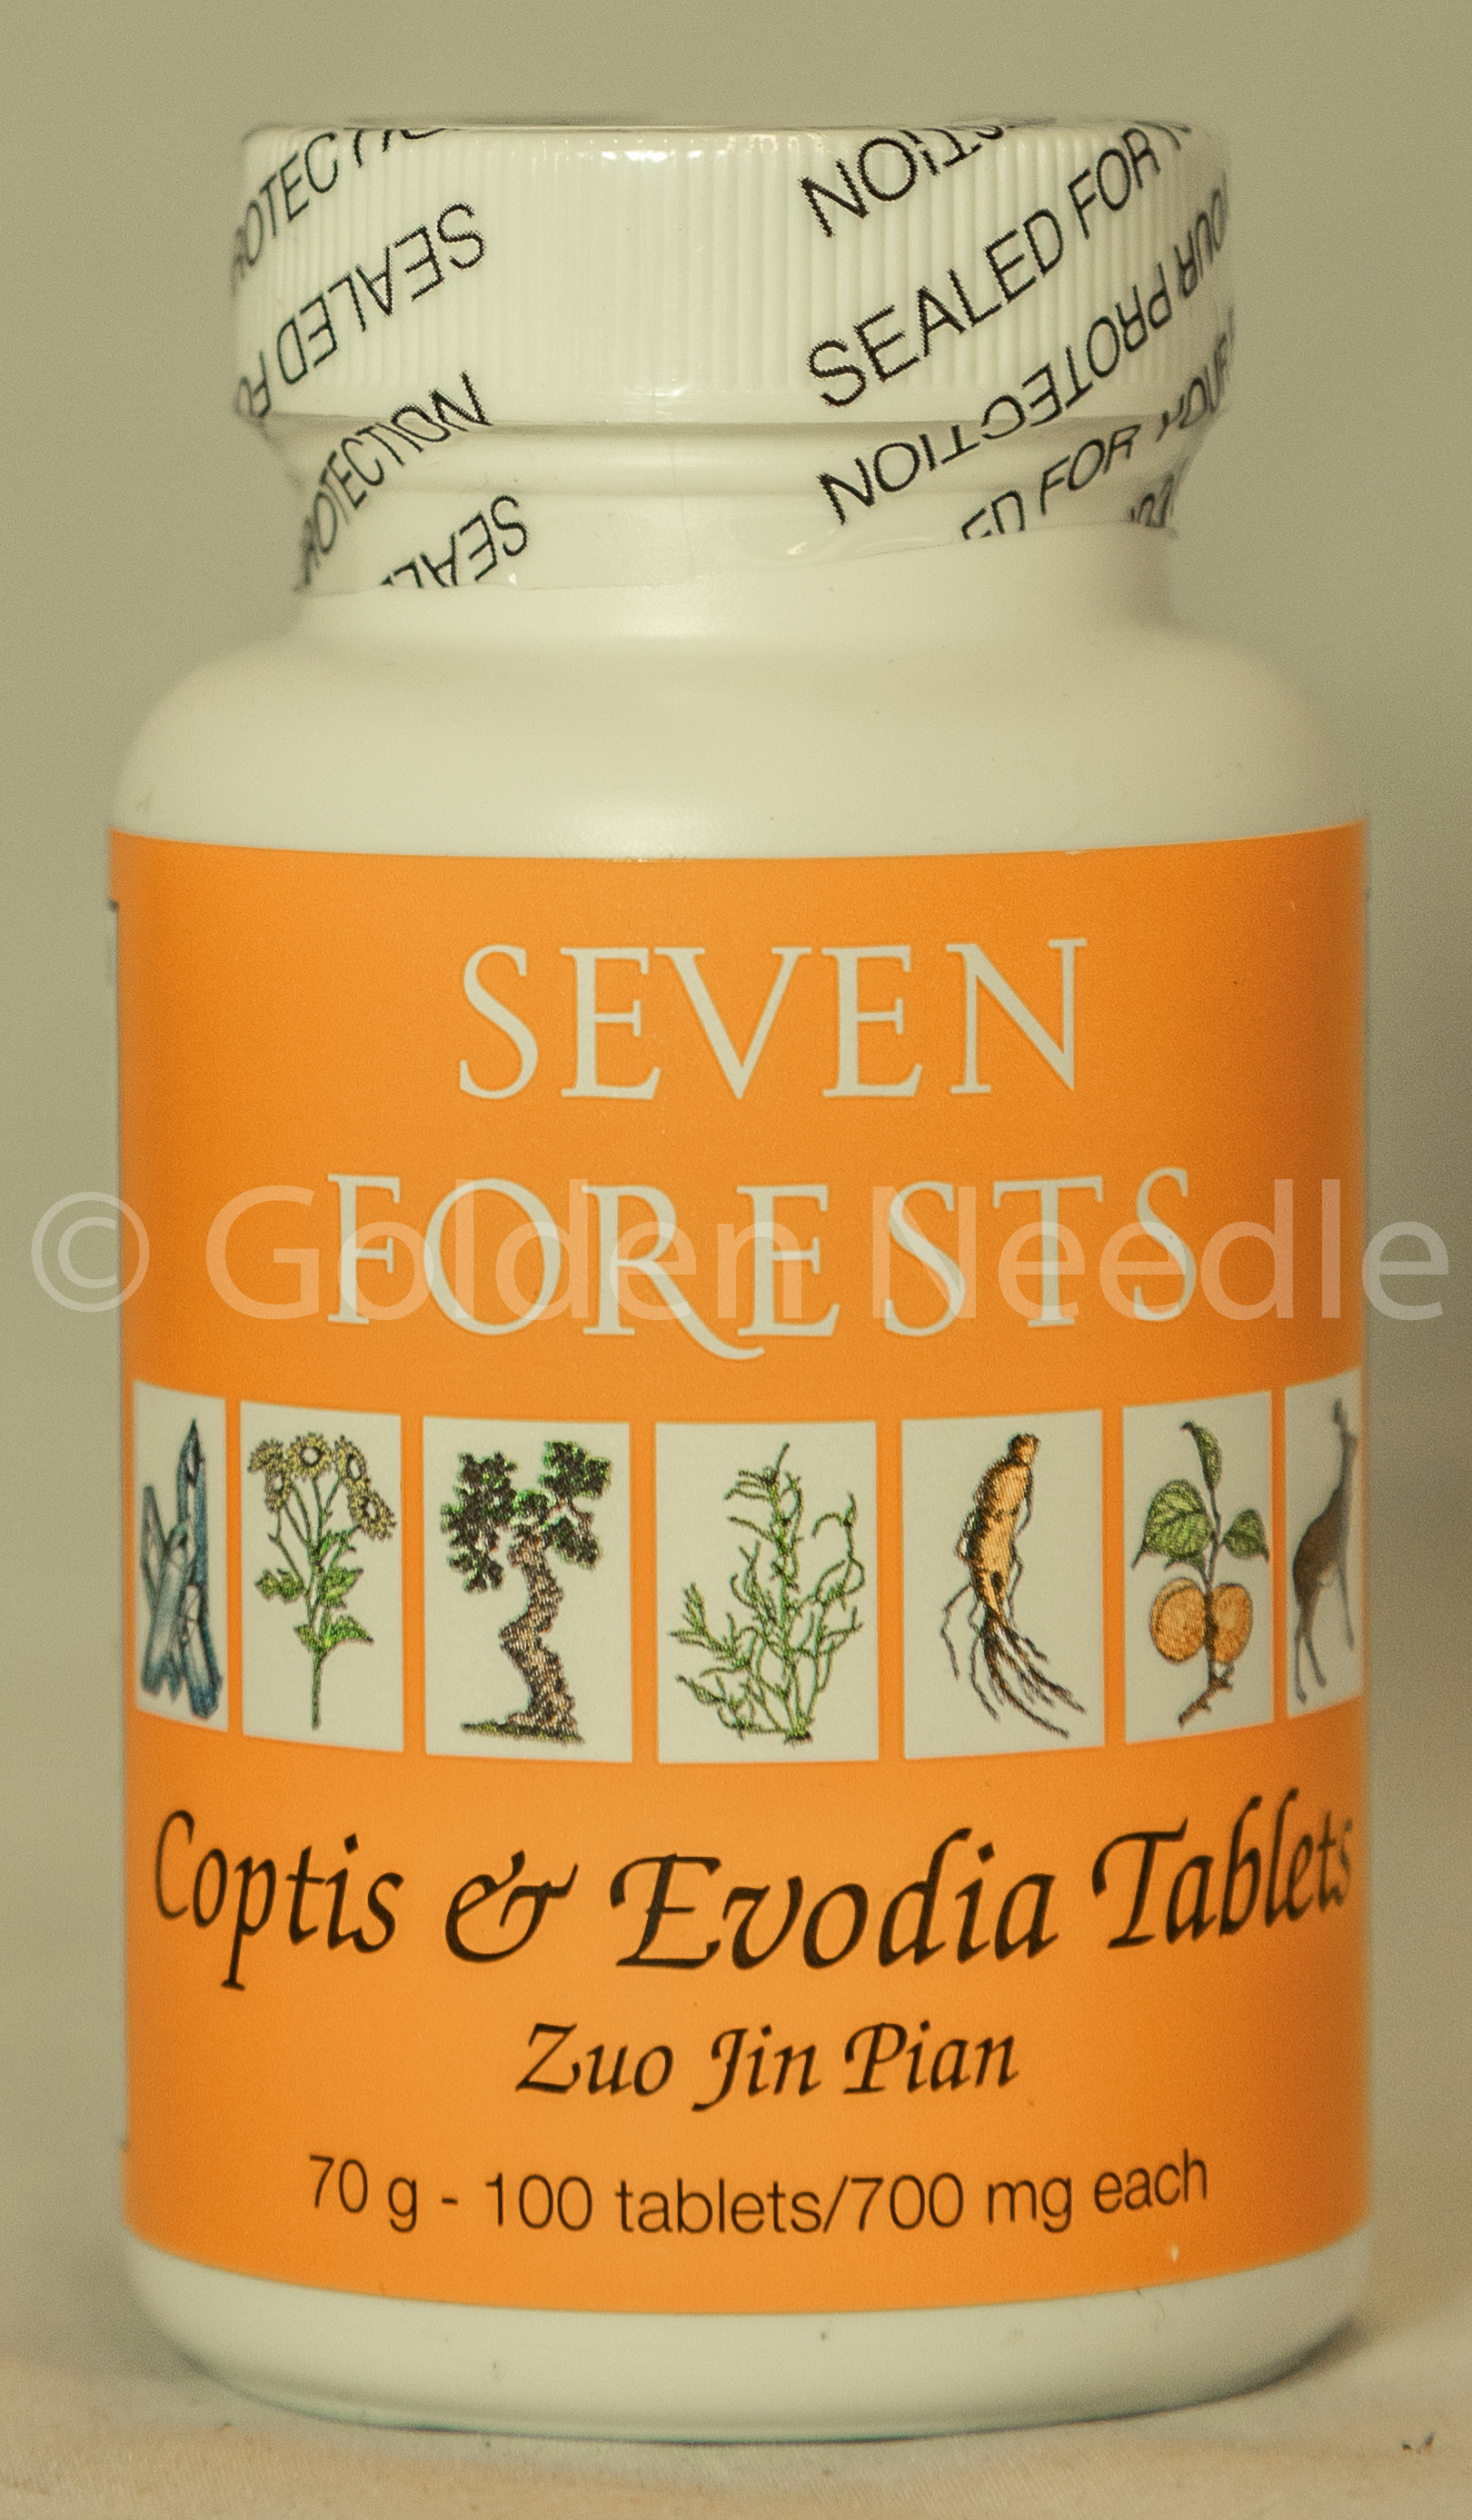 Coptis/Evodia Tablets